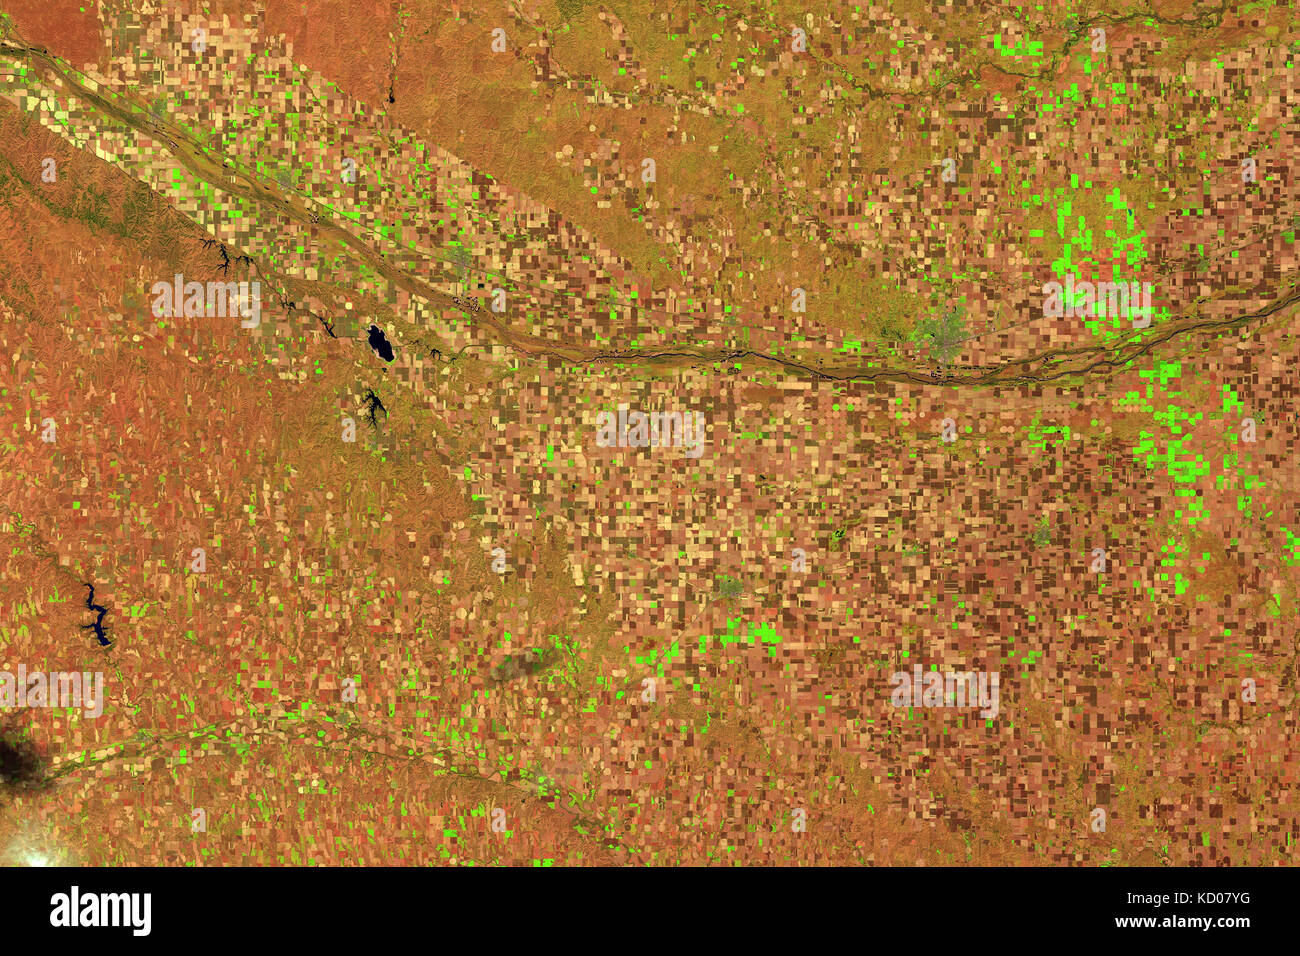 NASALandsat Bildergalerie Home Über Nachrichten wie Landsat hilft Bildung Bilder Daten von Landsat 8 Landsat 9 Suche die Galerie... Suche erworbenen septembe Stockfoto